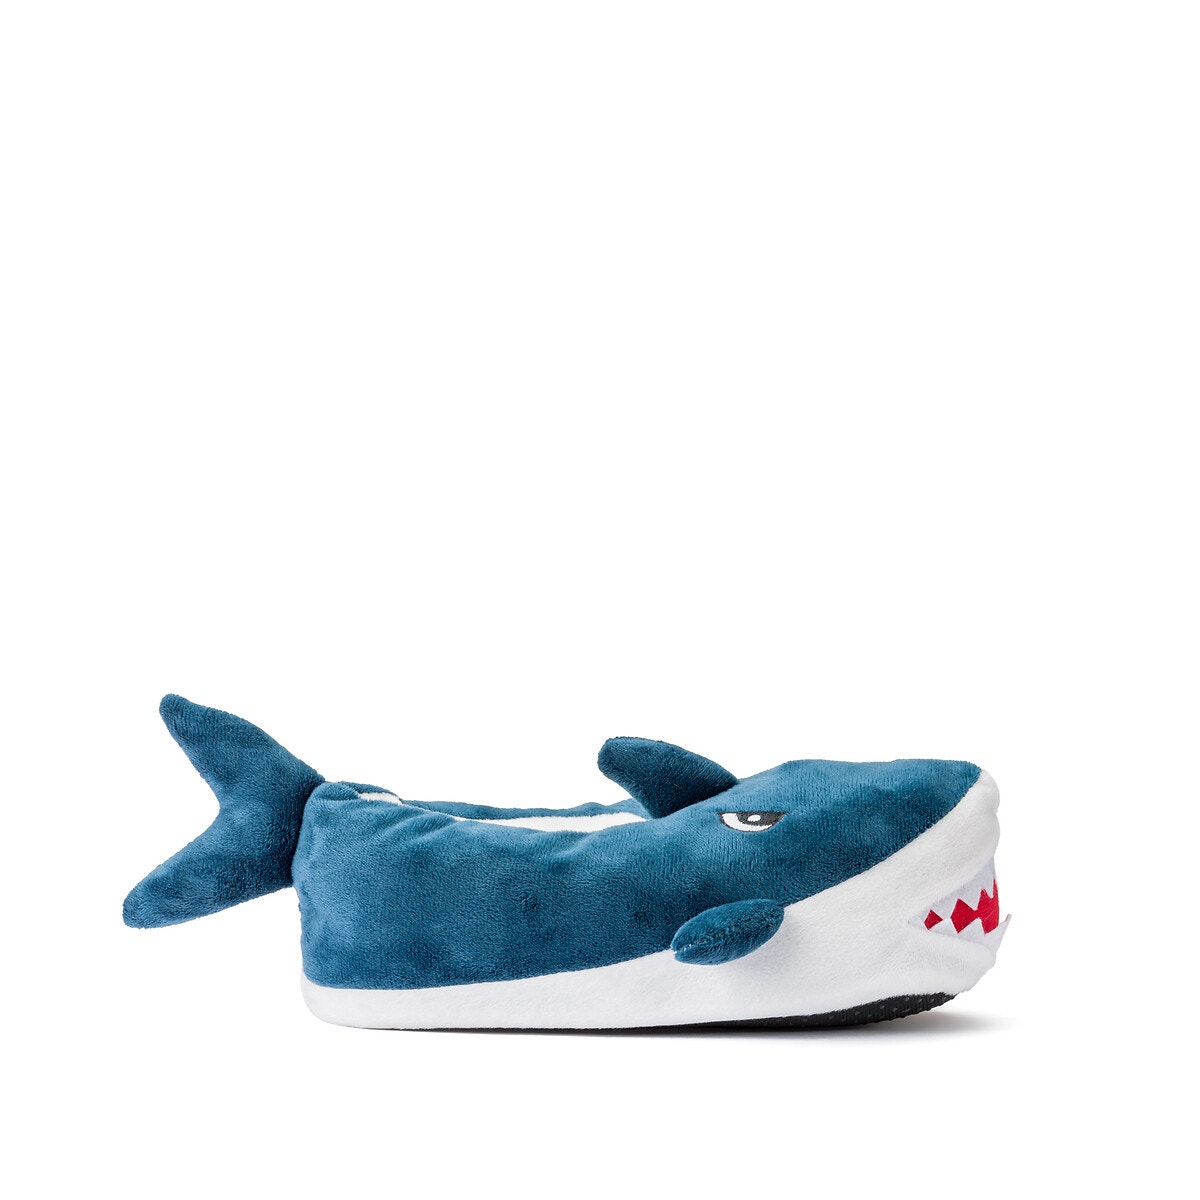 Μόδα > Παιδικά > Αγόρι > Παπούτσια > Παντόφλες Παντοφλάκια σε σχήμα καρχαρία